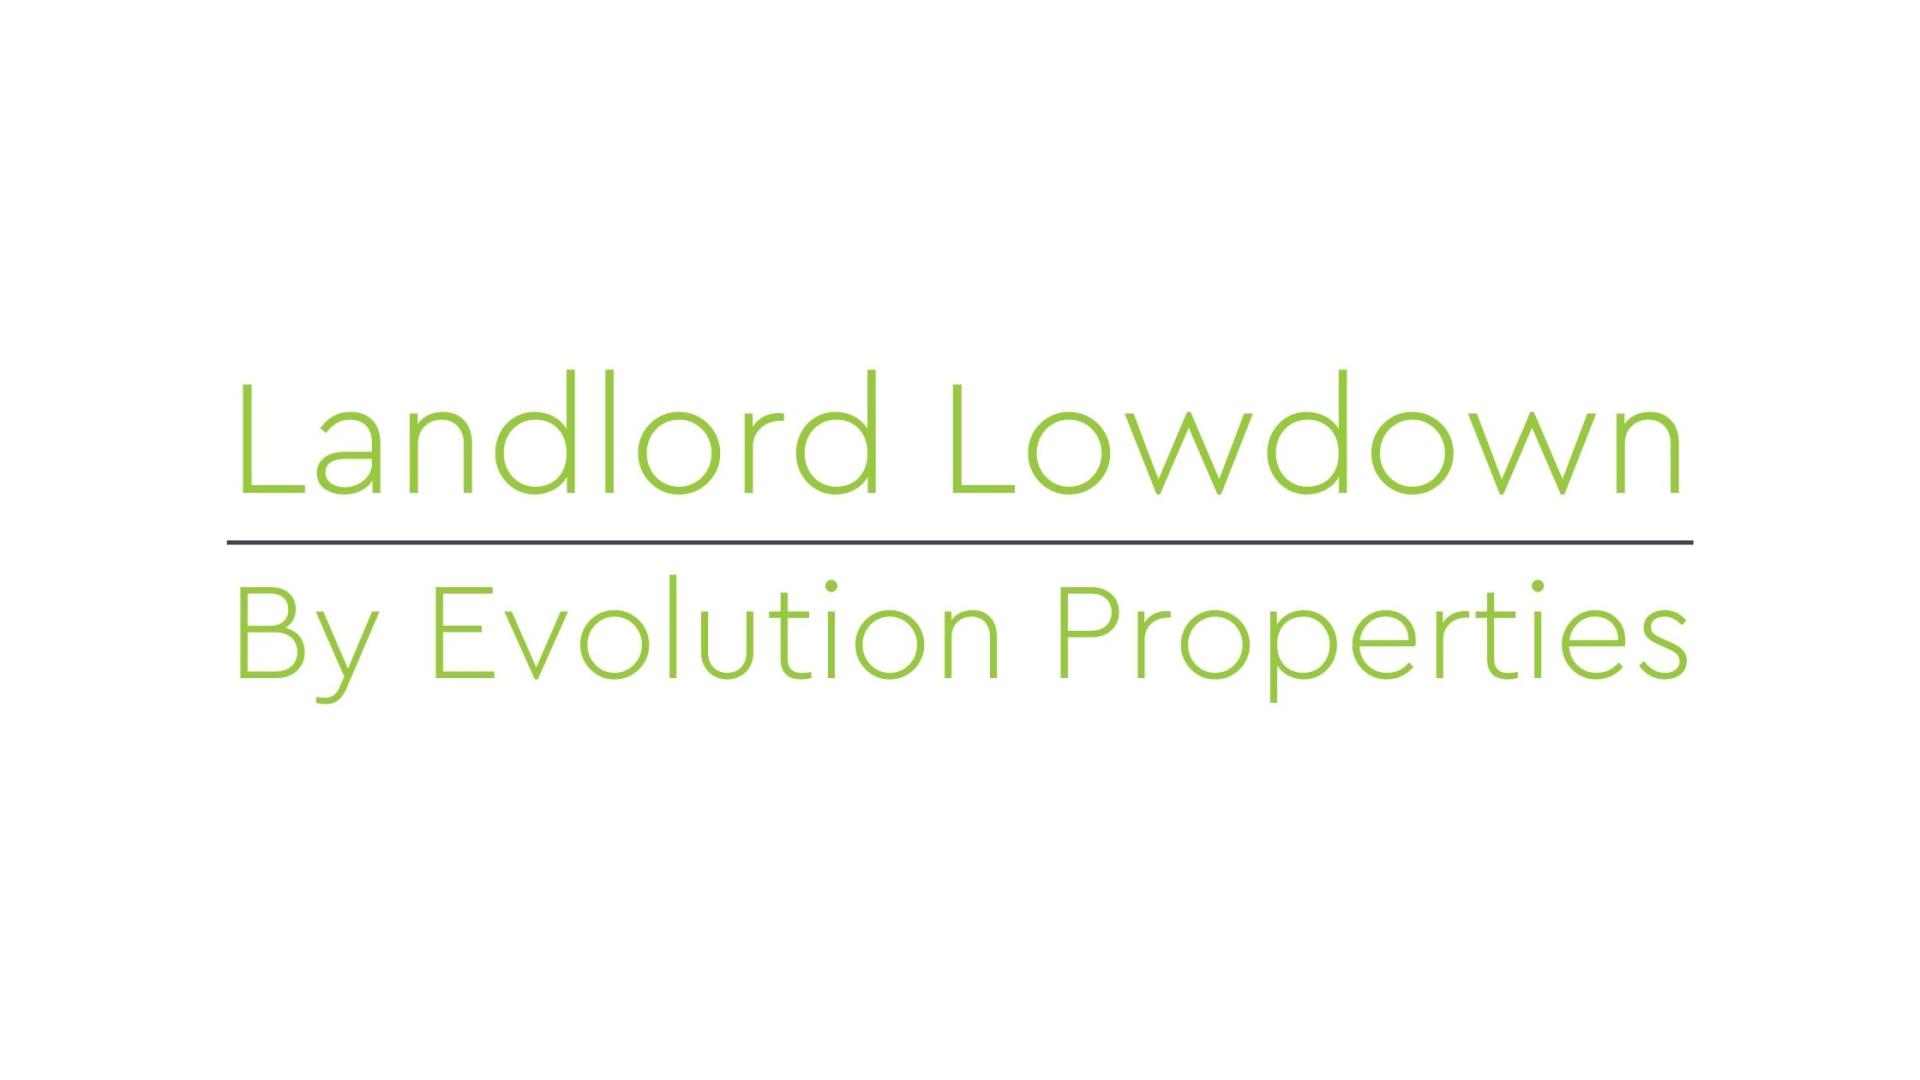 Landlord Lowdown